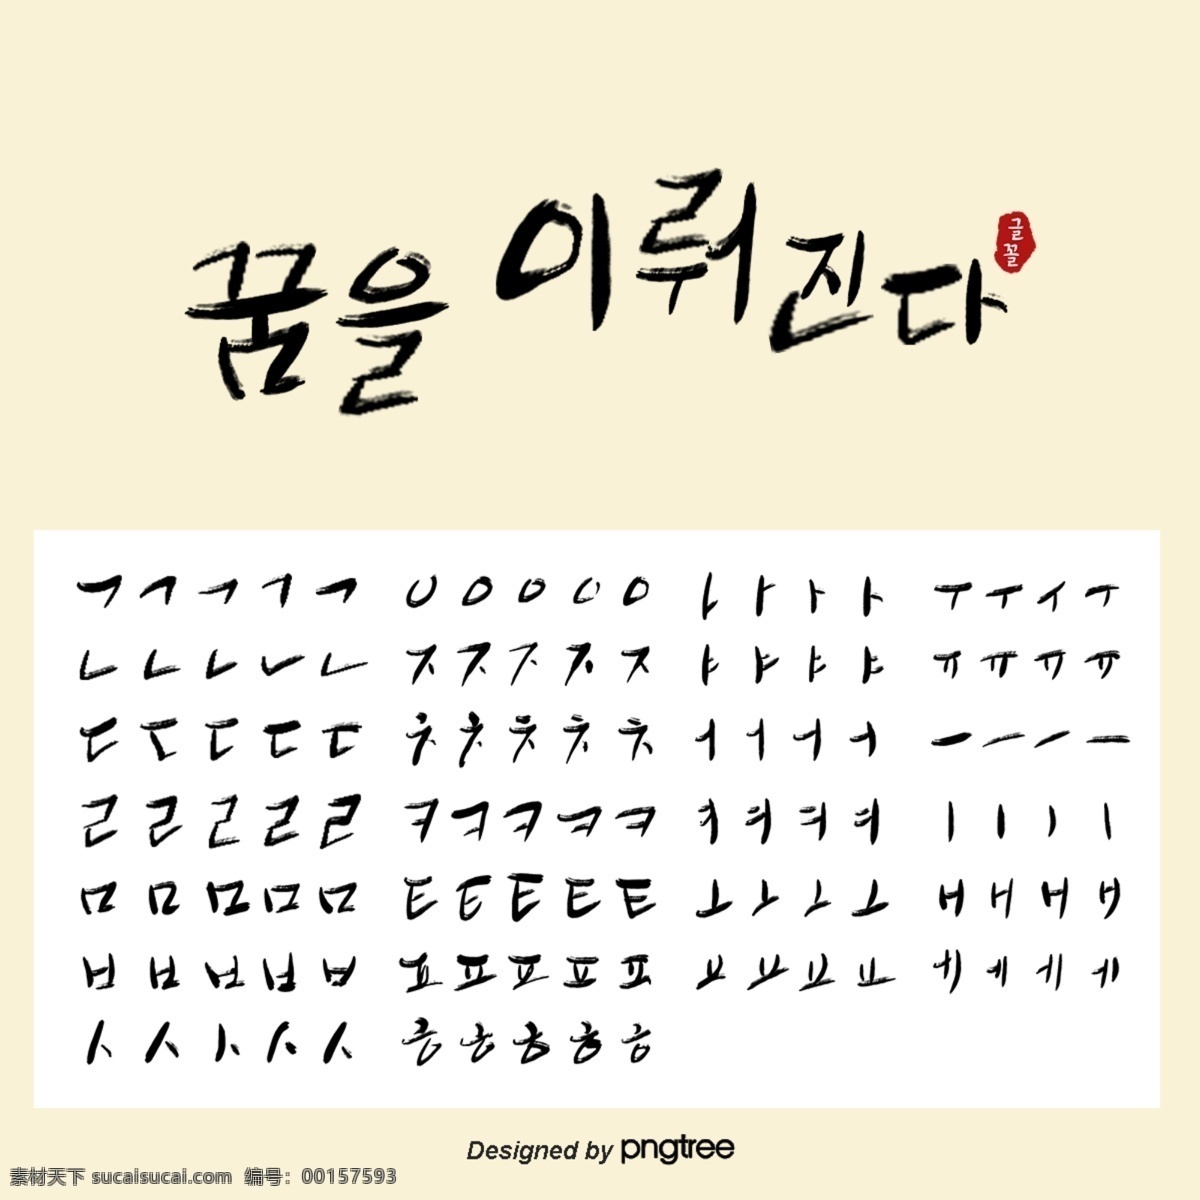 米色 简约 韩语 书法 笔画 笔画拆分 韩语笔画 书法笔画